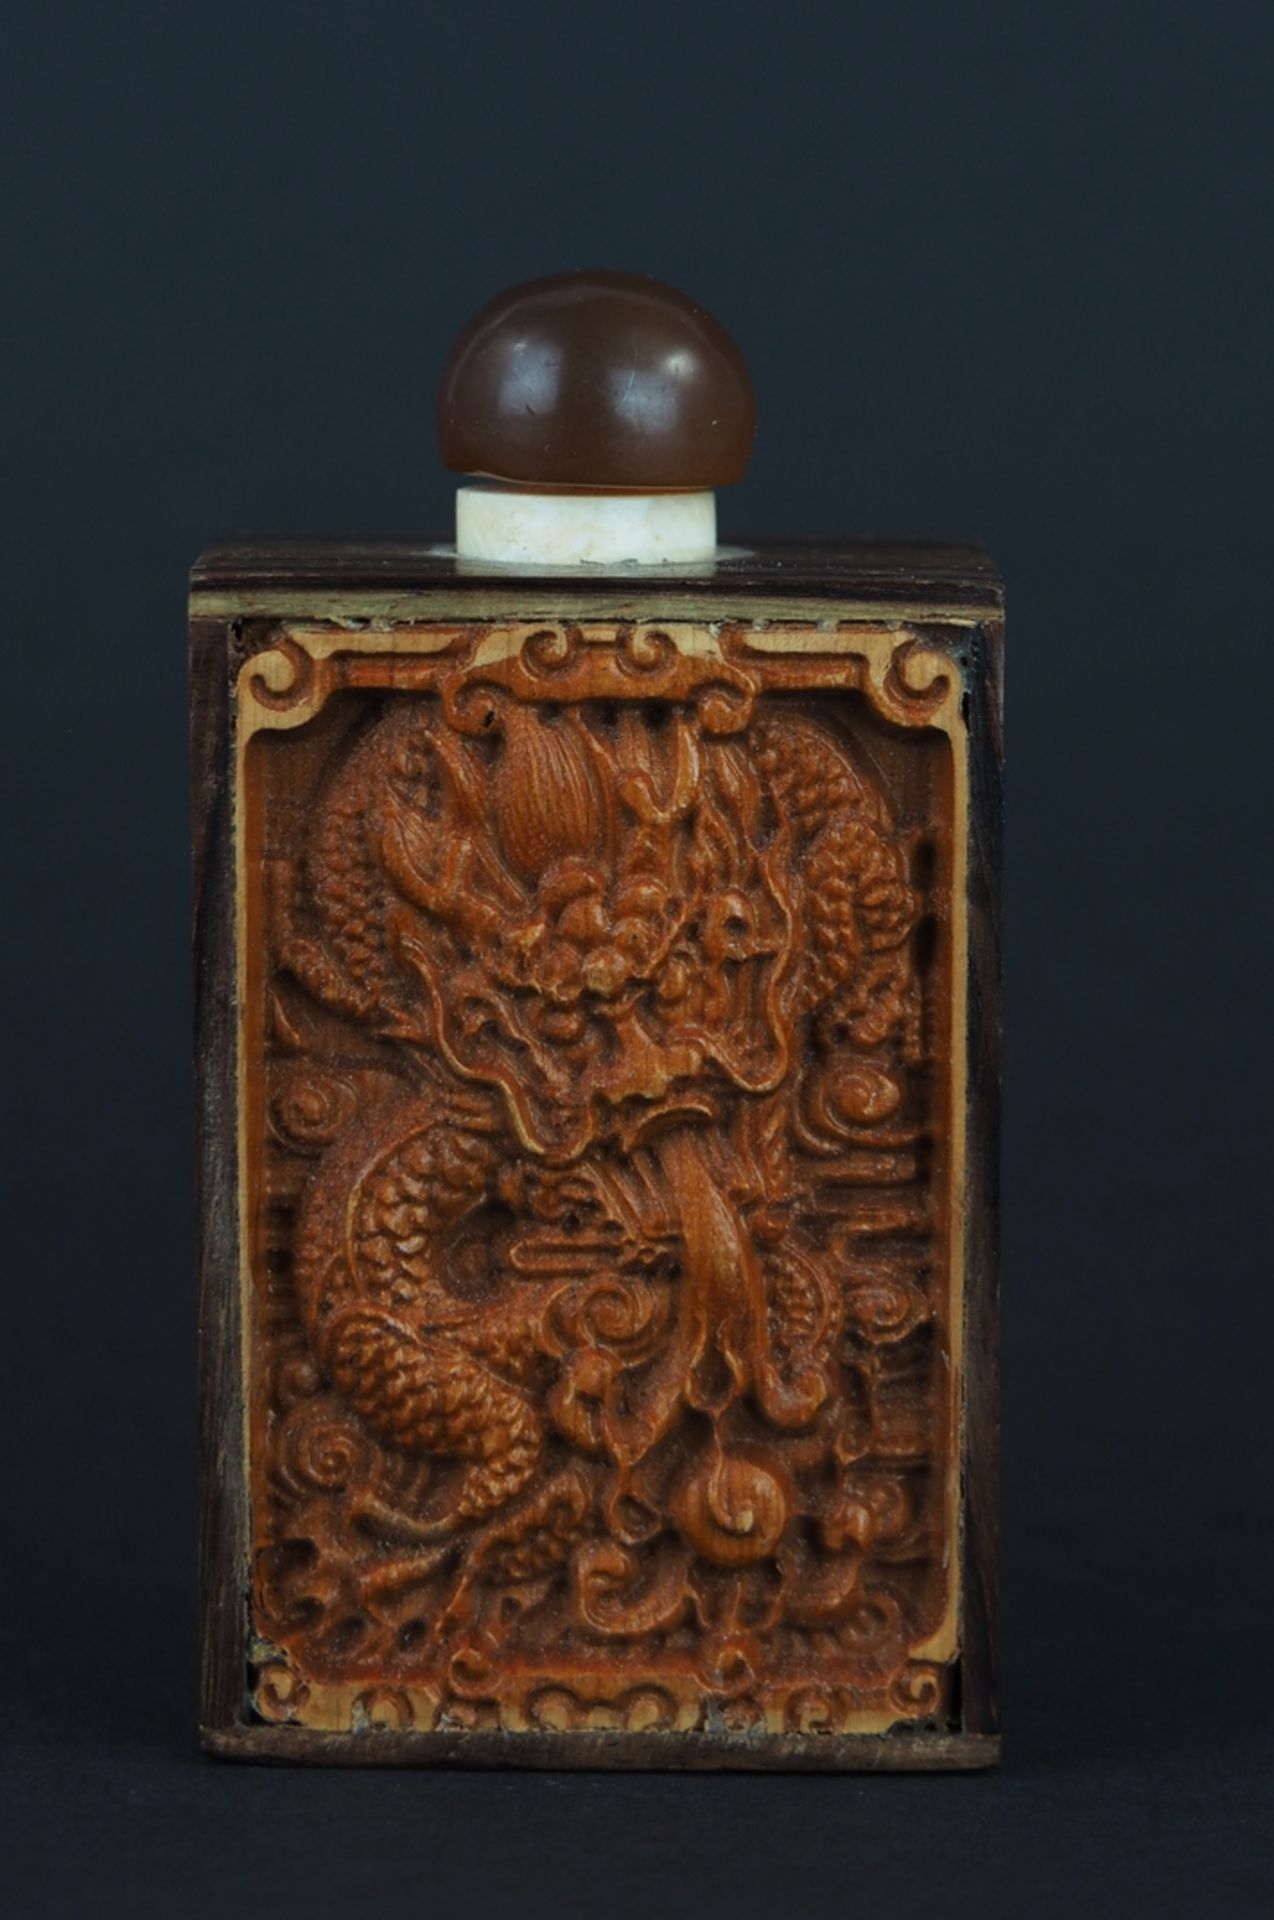 Snuffbottle. Holz mit zwei Darstellungen im Relief (Drache und Buddha). Signaturenmarke. China. H 7 - Image 2 of 2